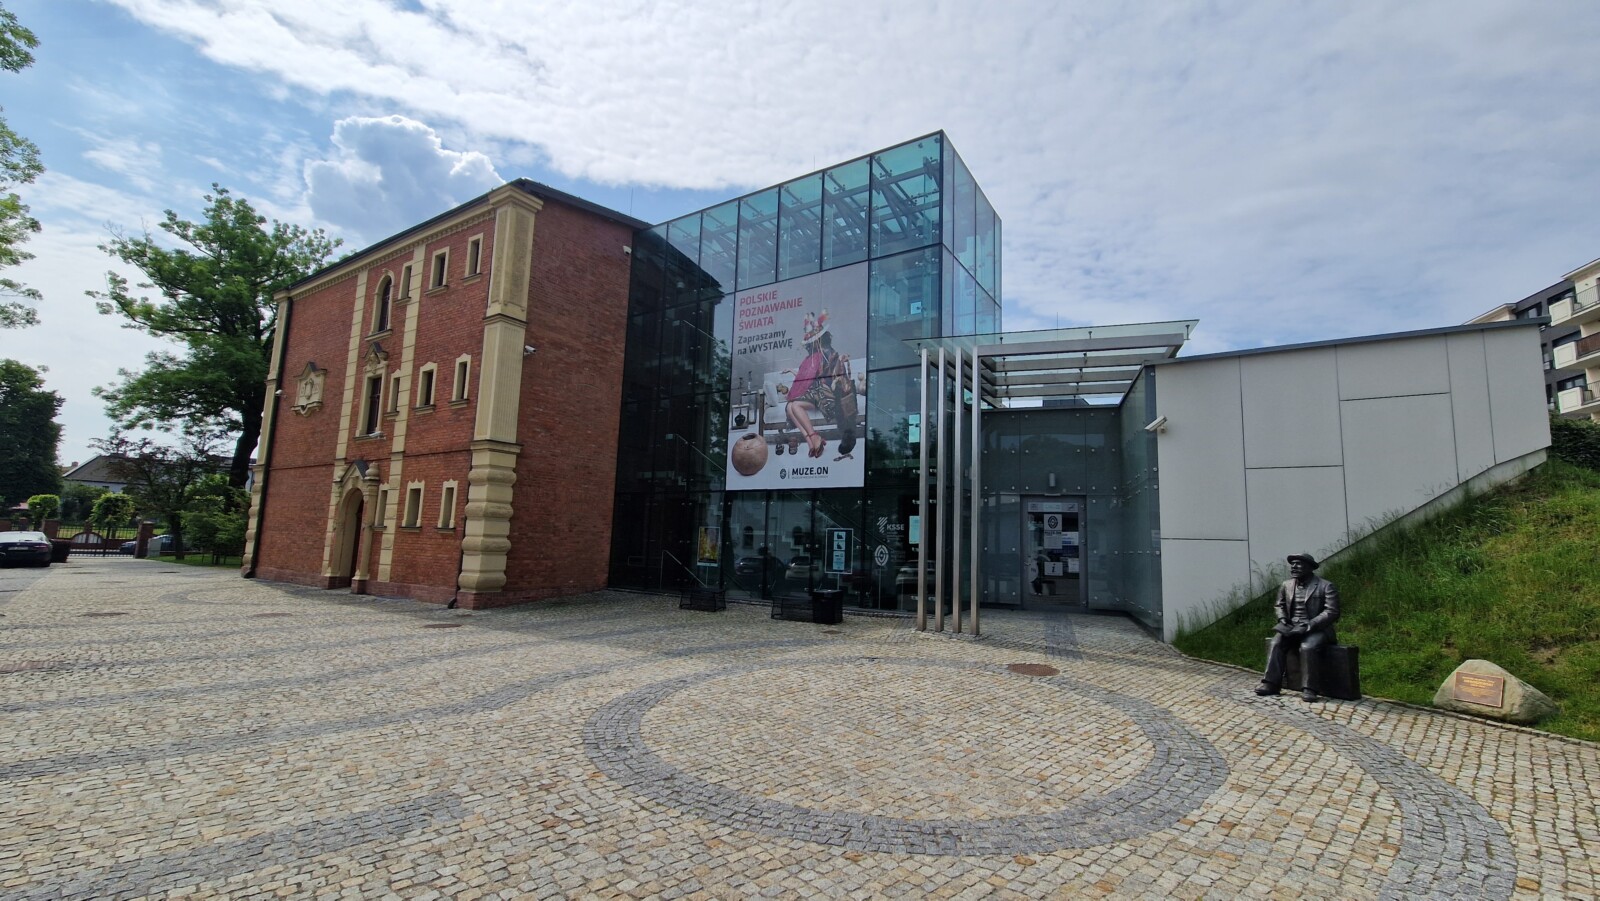 Opowieści o regionie: piękny budynek muzeum w Żorach